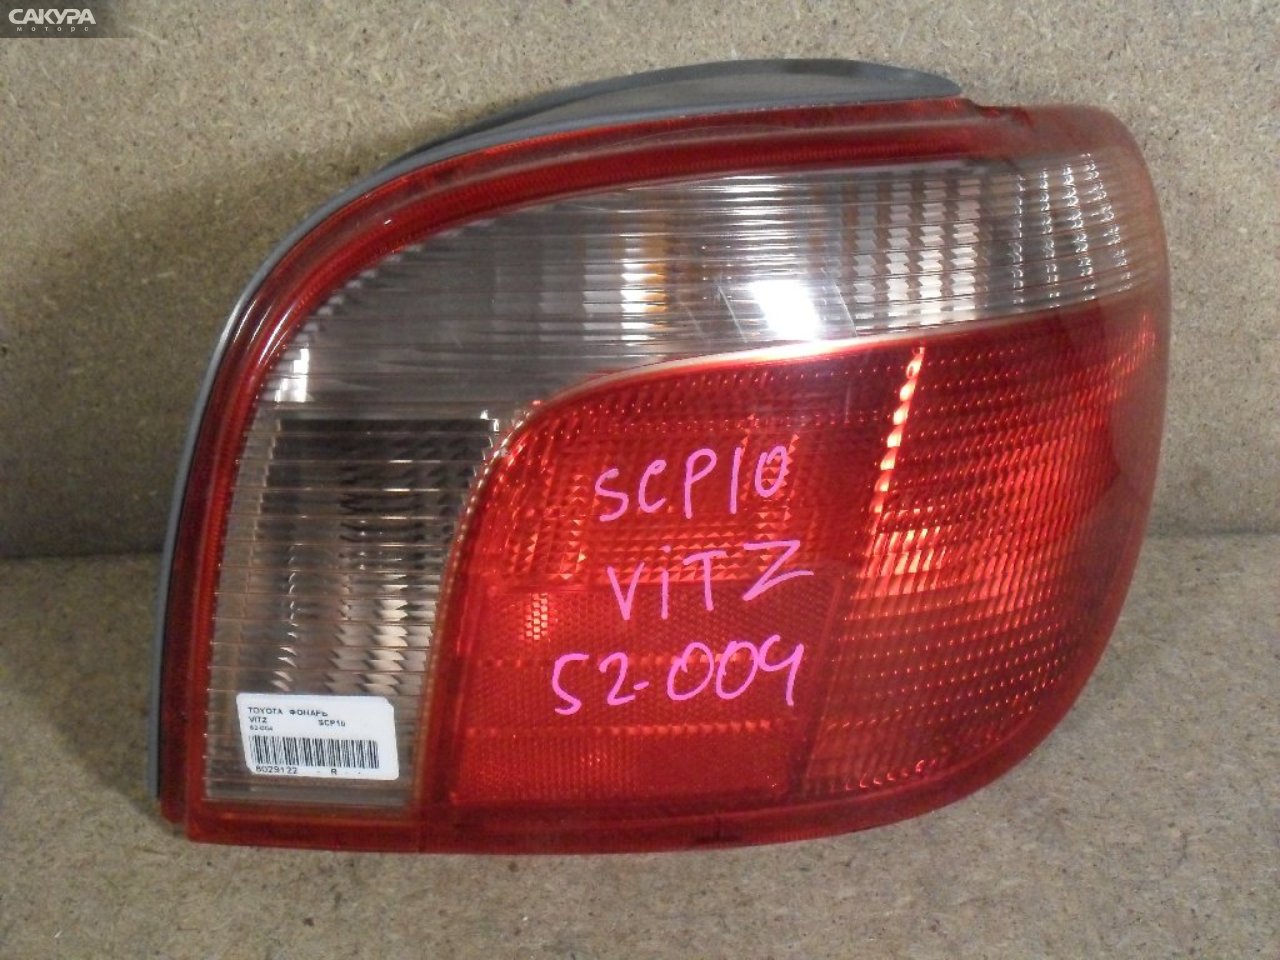 Фонарь стоп-сигнала правый Toyota Vitz SCP10 52-004: купить в Сакура Абакан.